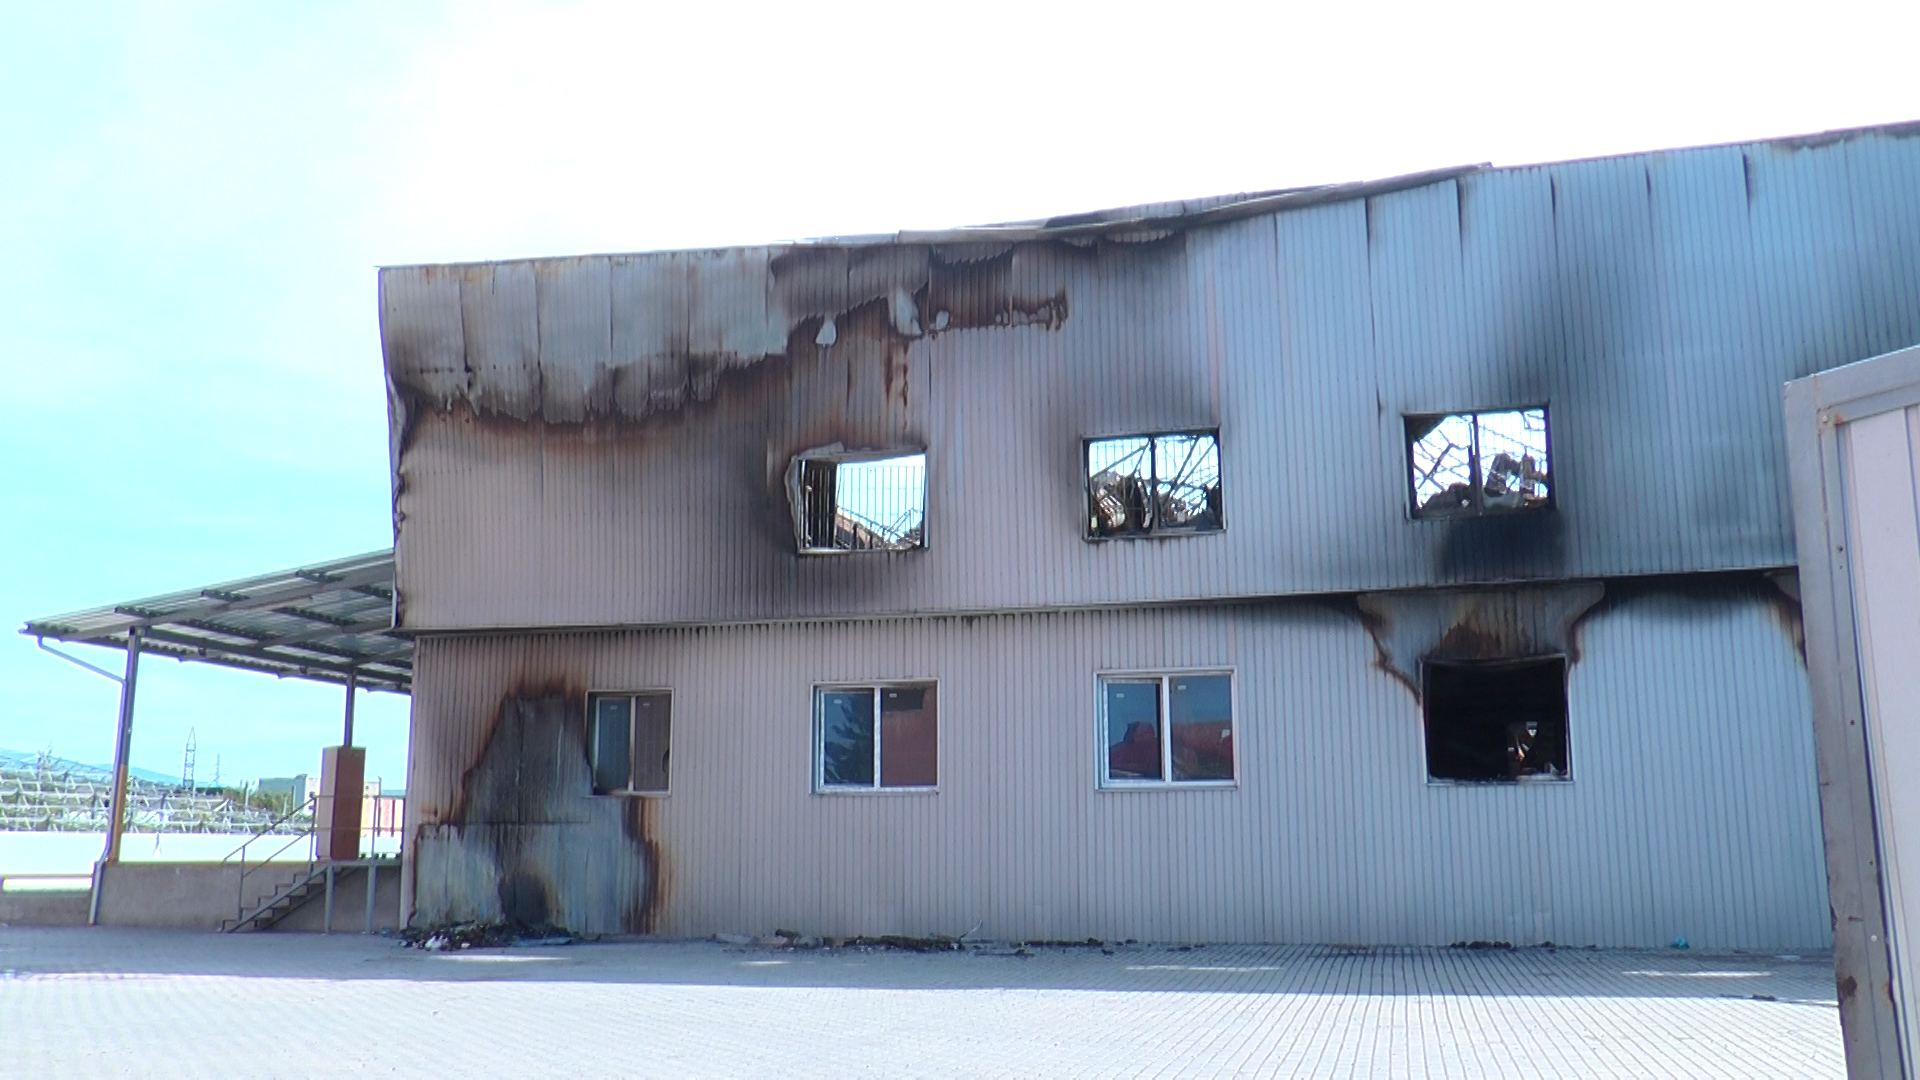 Спеціальна комісія розпочала вивчення причин виникнення пожежі у будинку "Нової Пошти" (ВІДЕО)